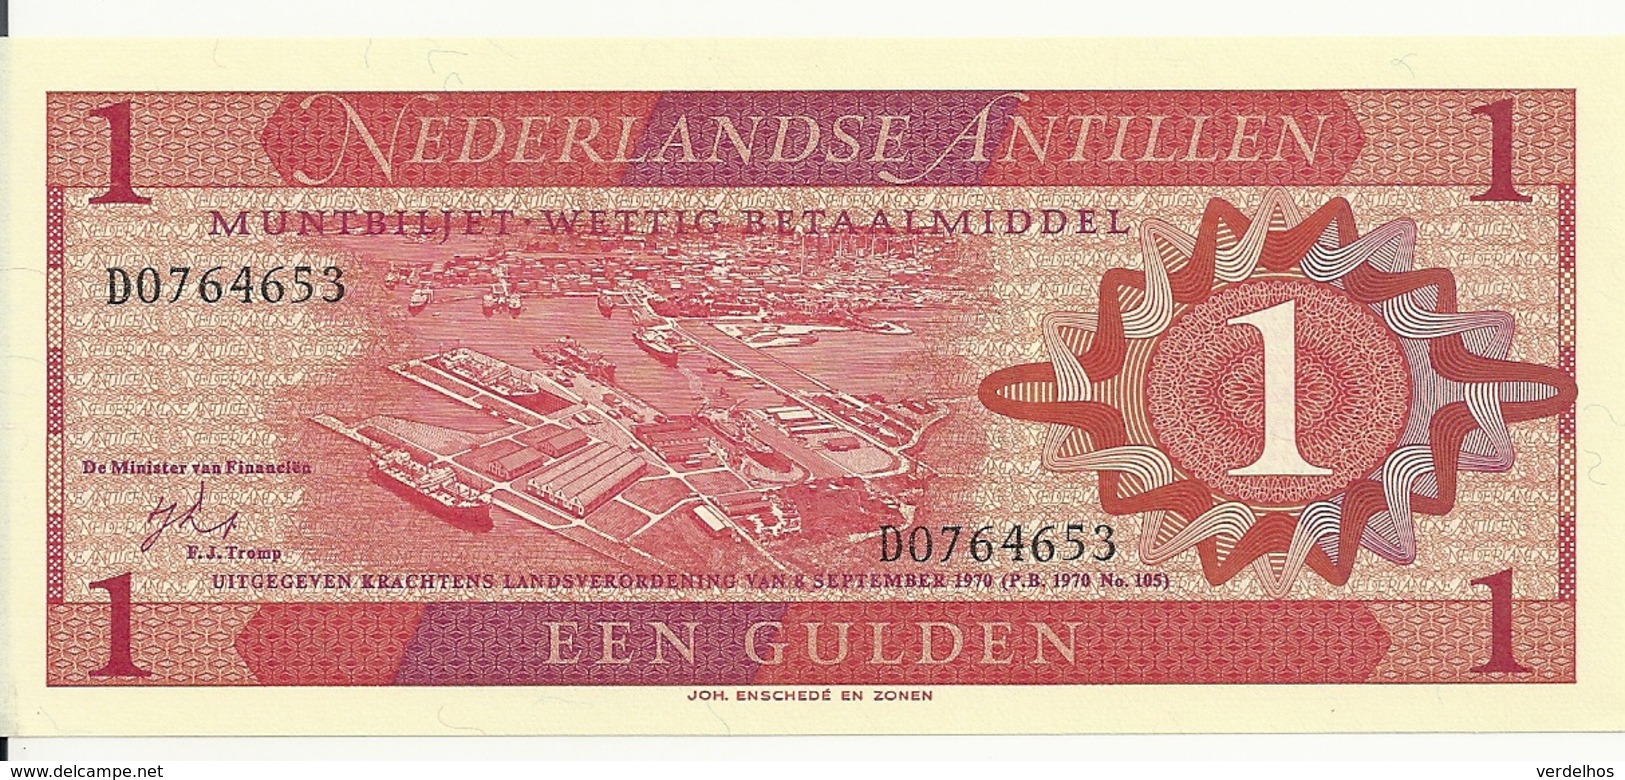 ANTILLES NEERLANDAISES 1 GULDEN 1970 UNC P 20 - Antilles Néerlandaises (...-1986)